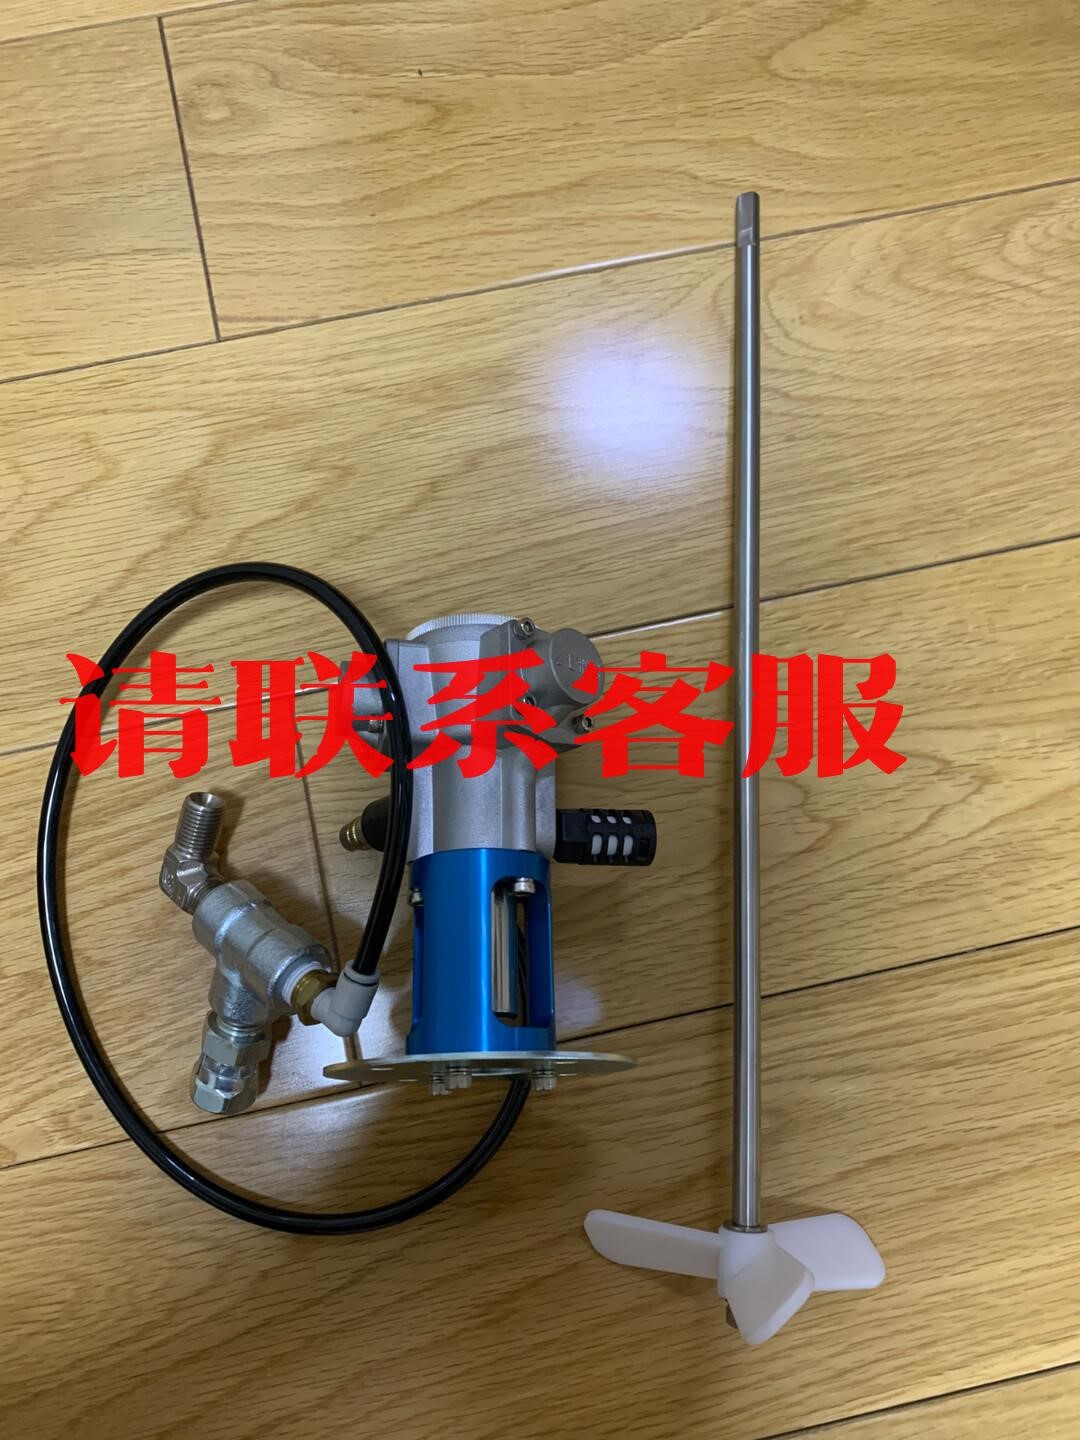 日本岩田气动搅拌器 AMM-721B全新未使用过，图片议价出售